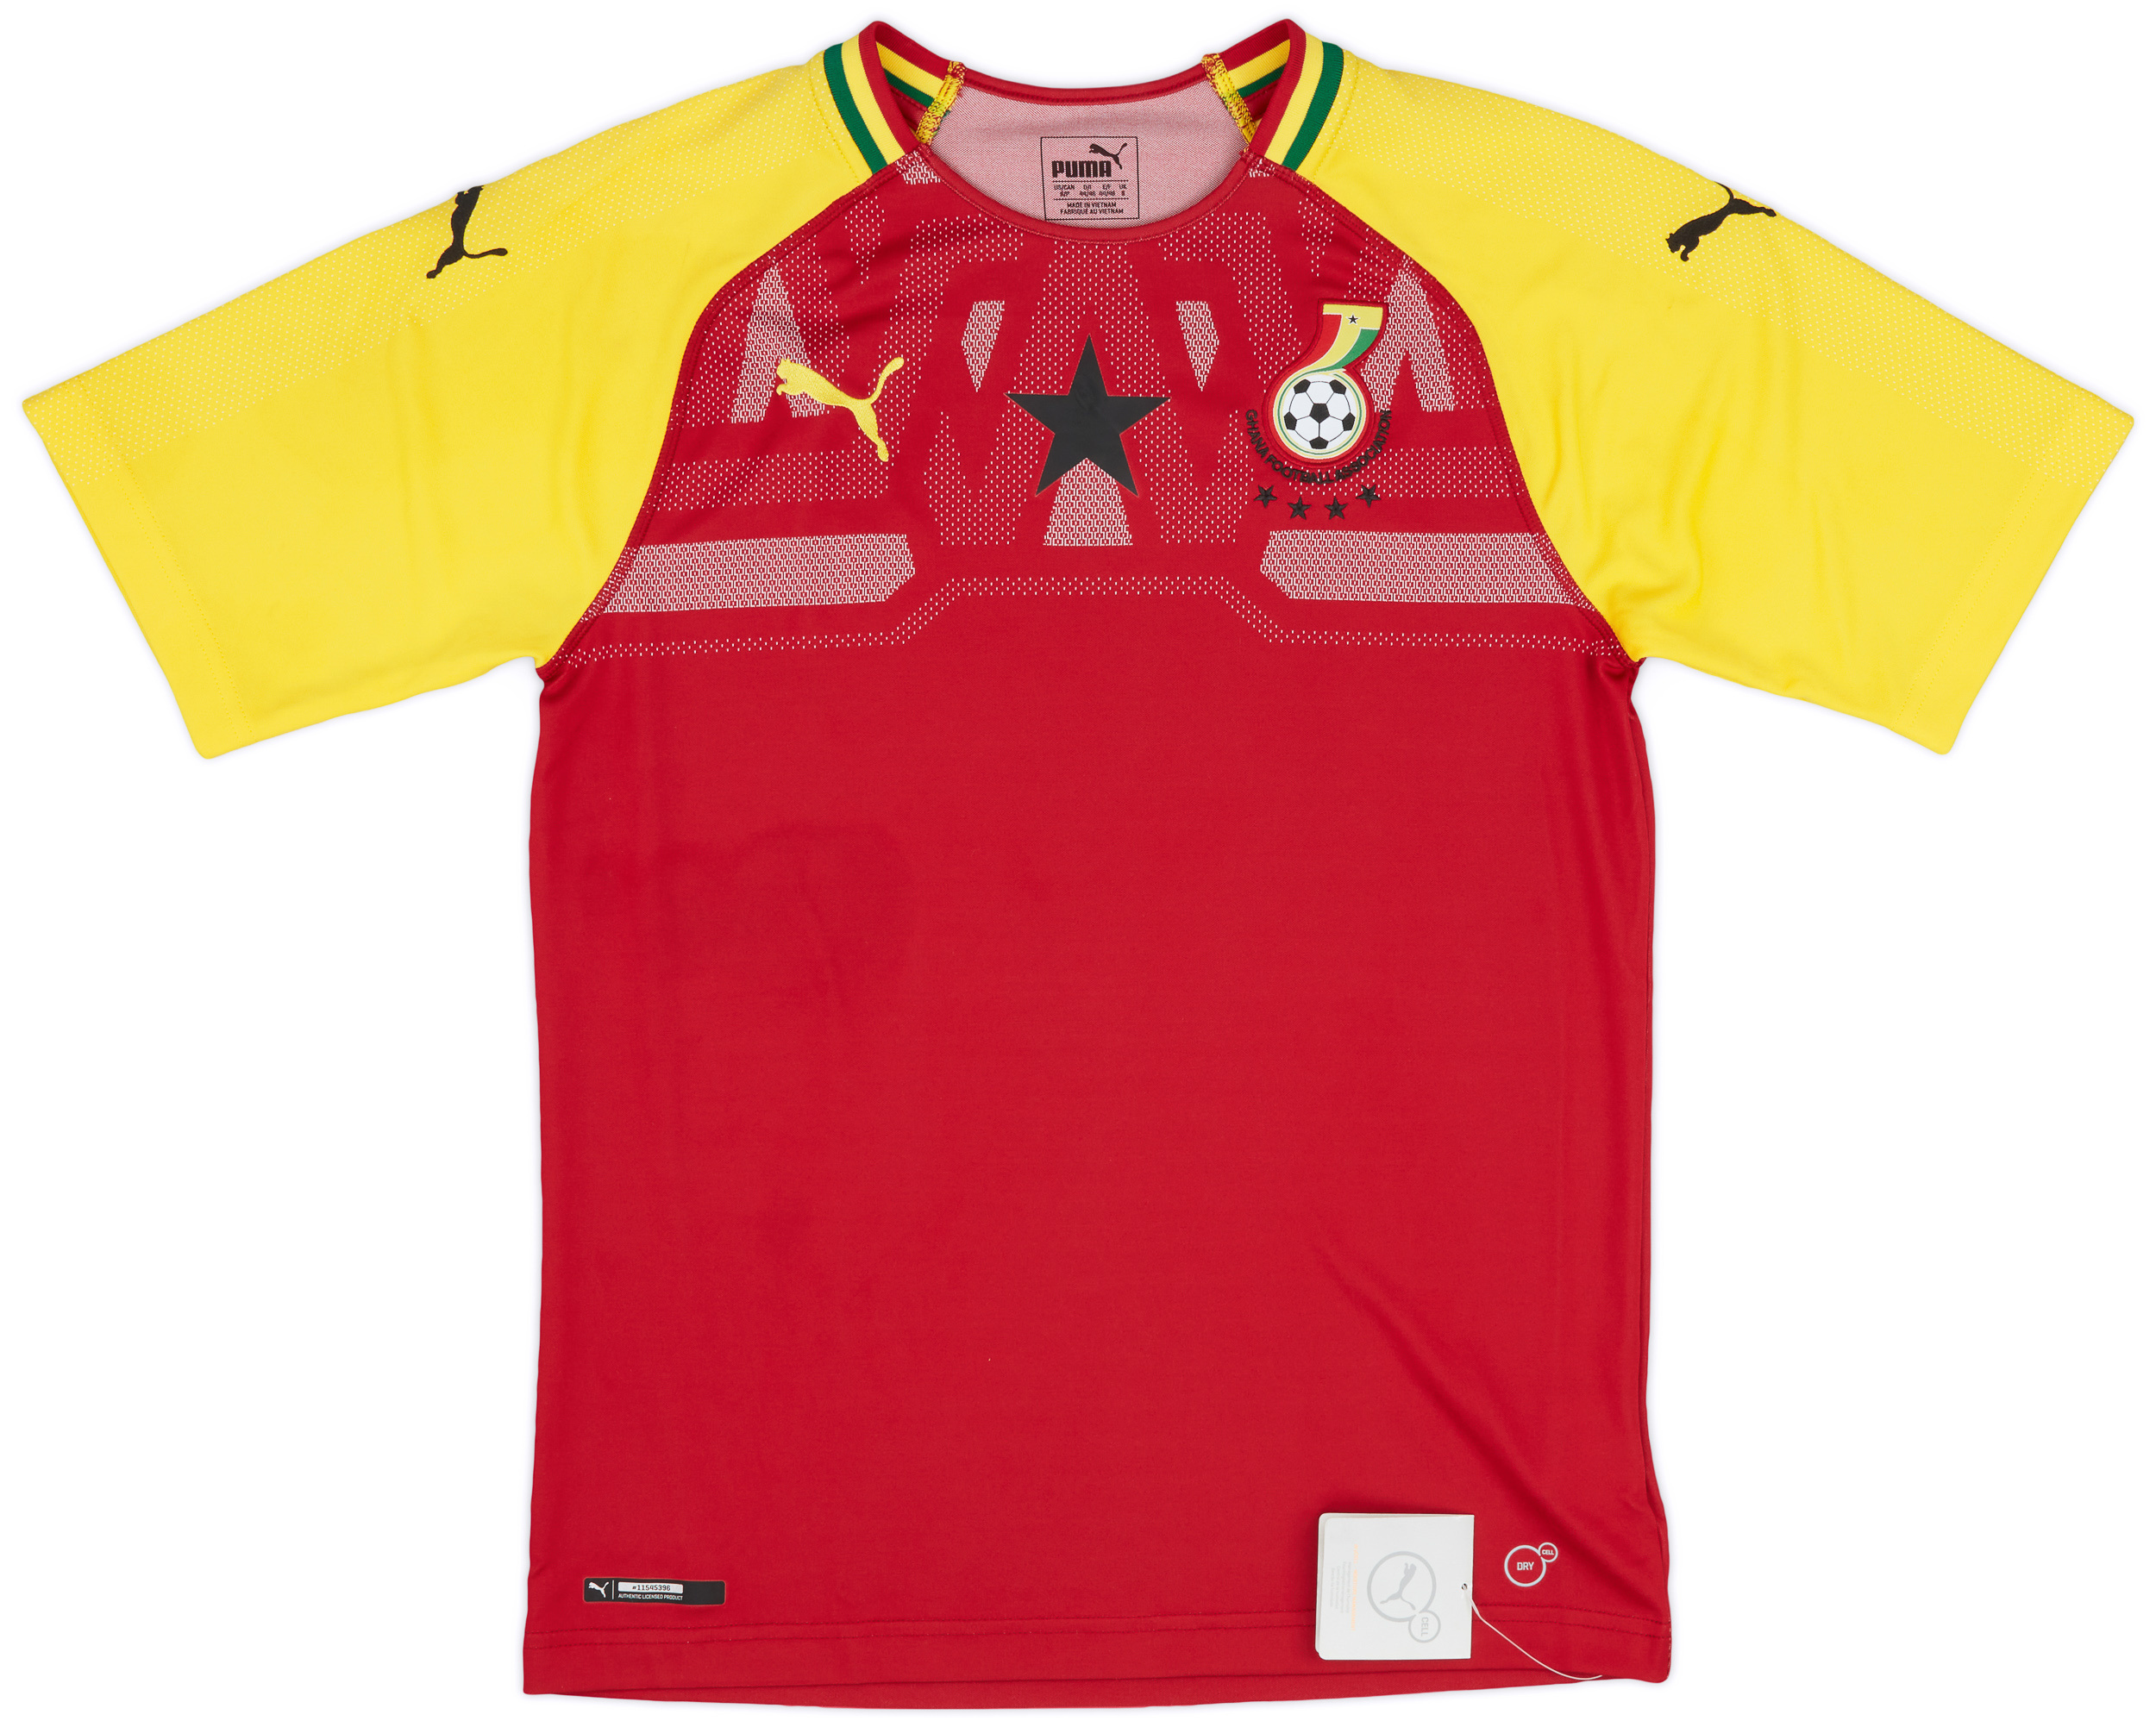 Retro Ghana Shirt